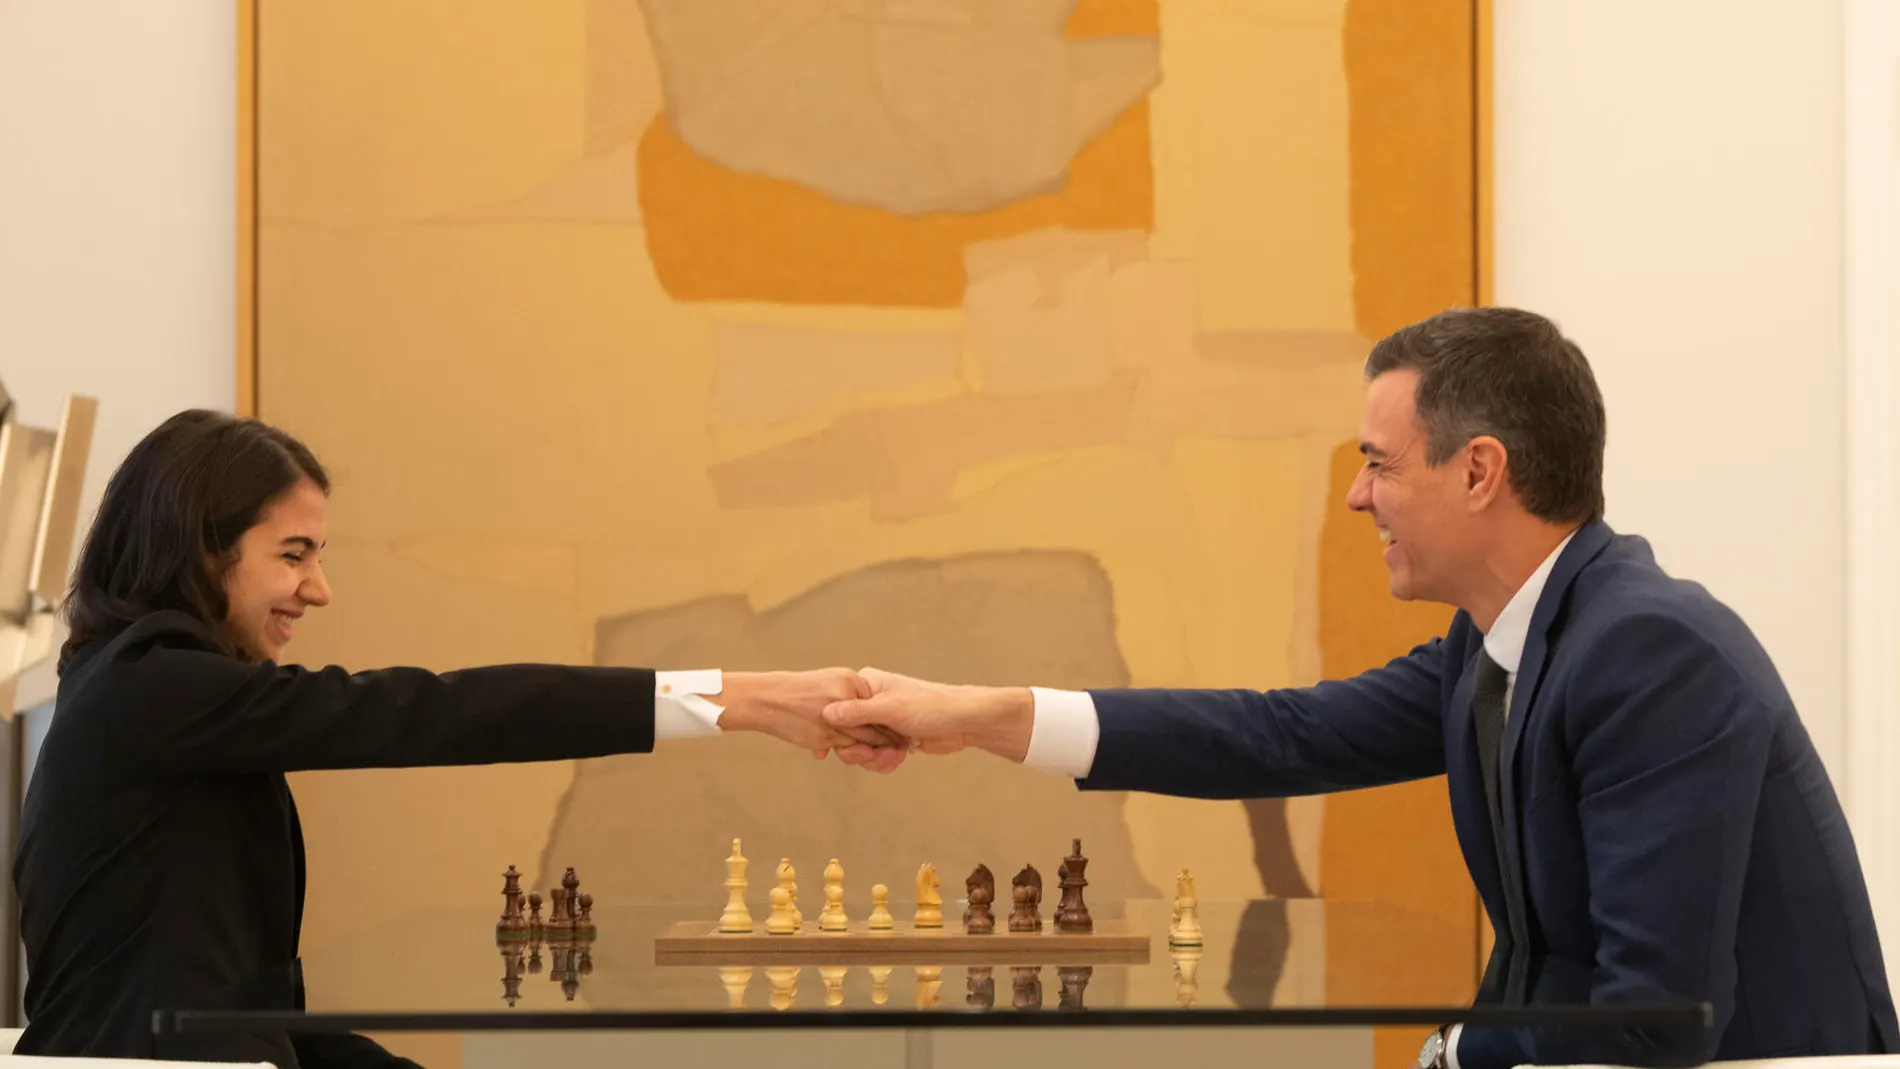 El presidente del Gobierno, Pedro Sánchez, juega una partida de ajedrez con la iraní Sara Khadem